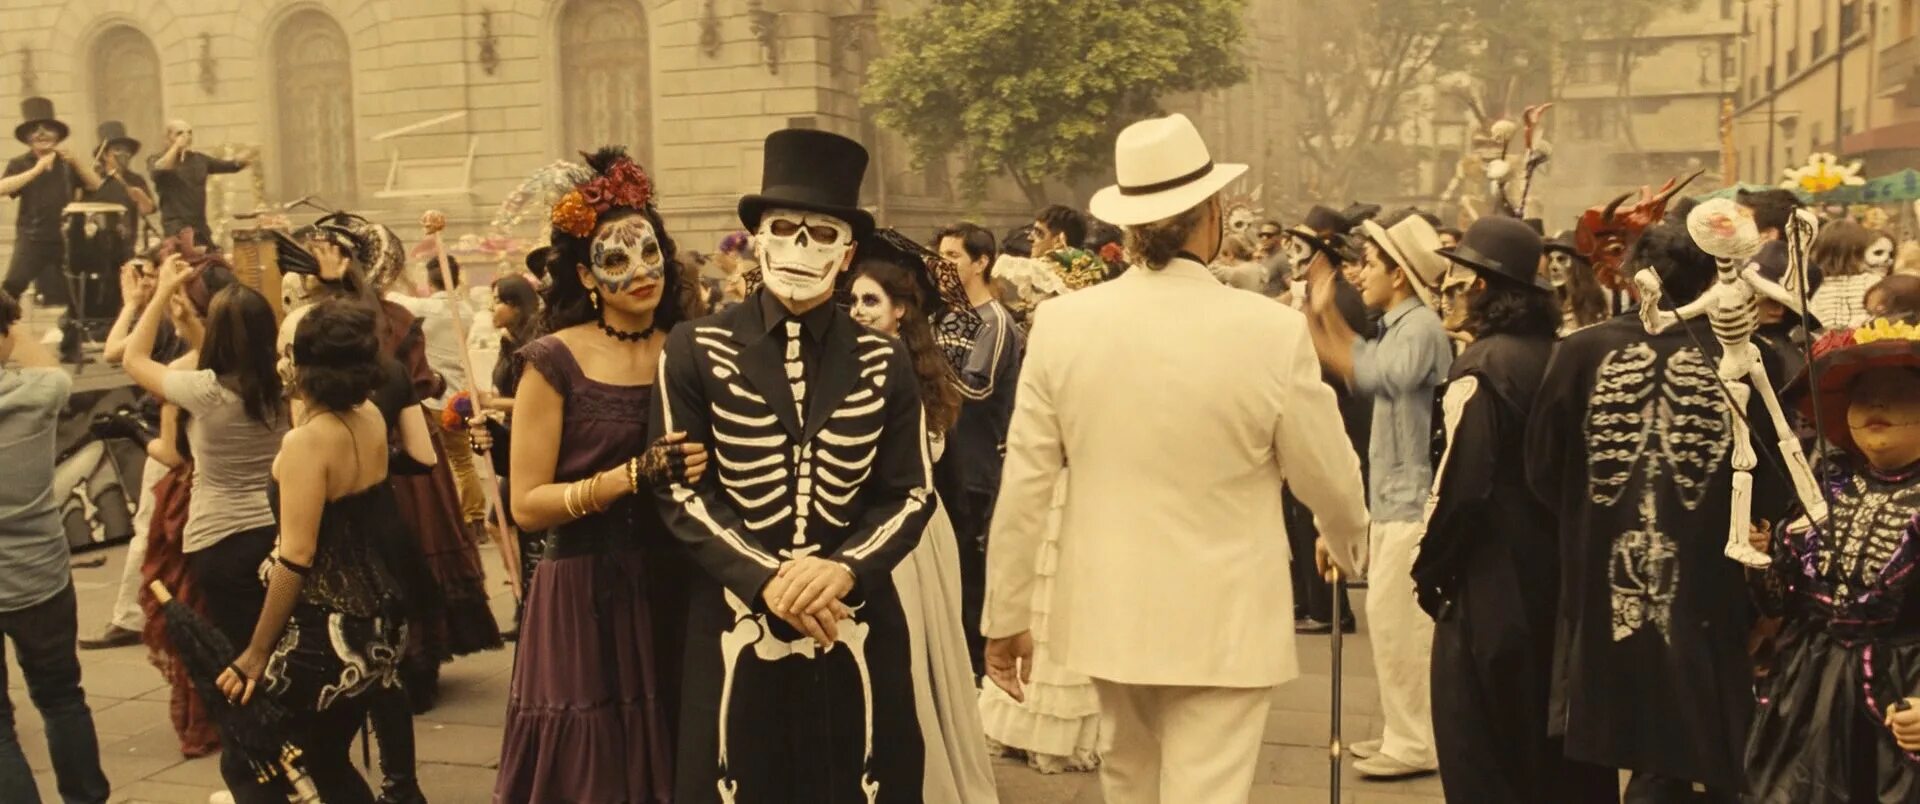 Семь дней 2015. Спектр 007 день мертвых. 007 Спектр карнавал. 007 Спектр Мехико.